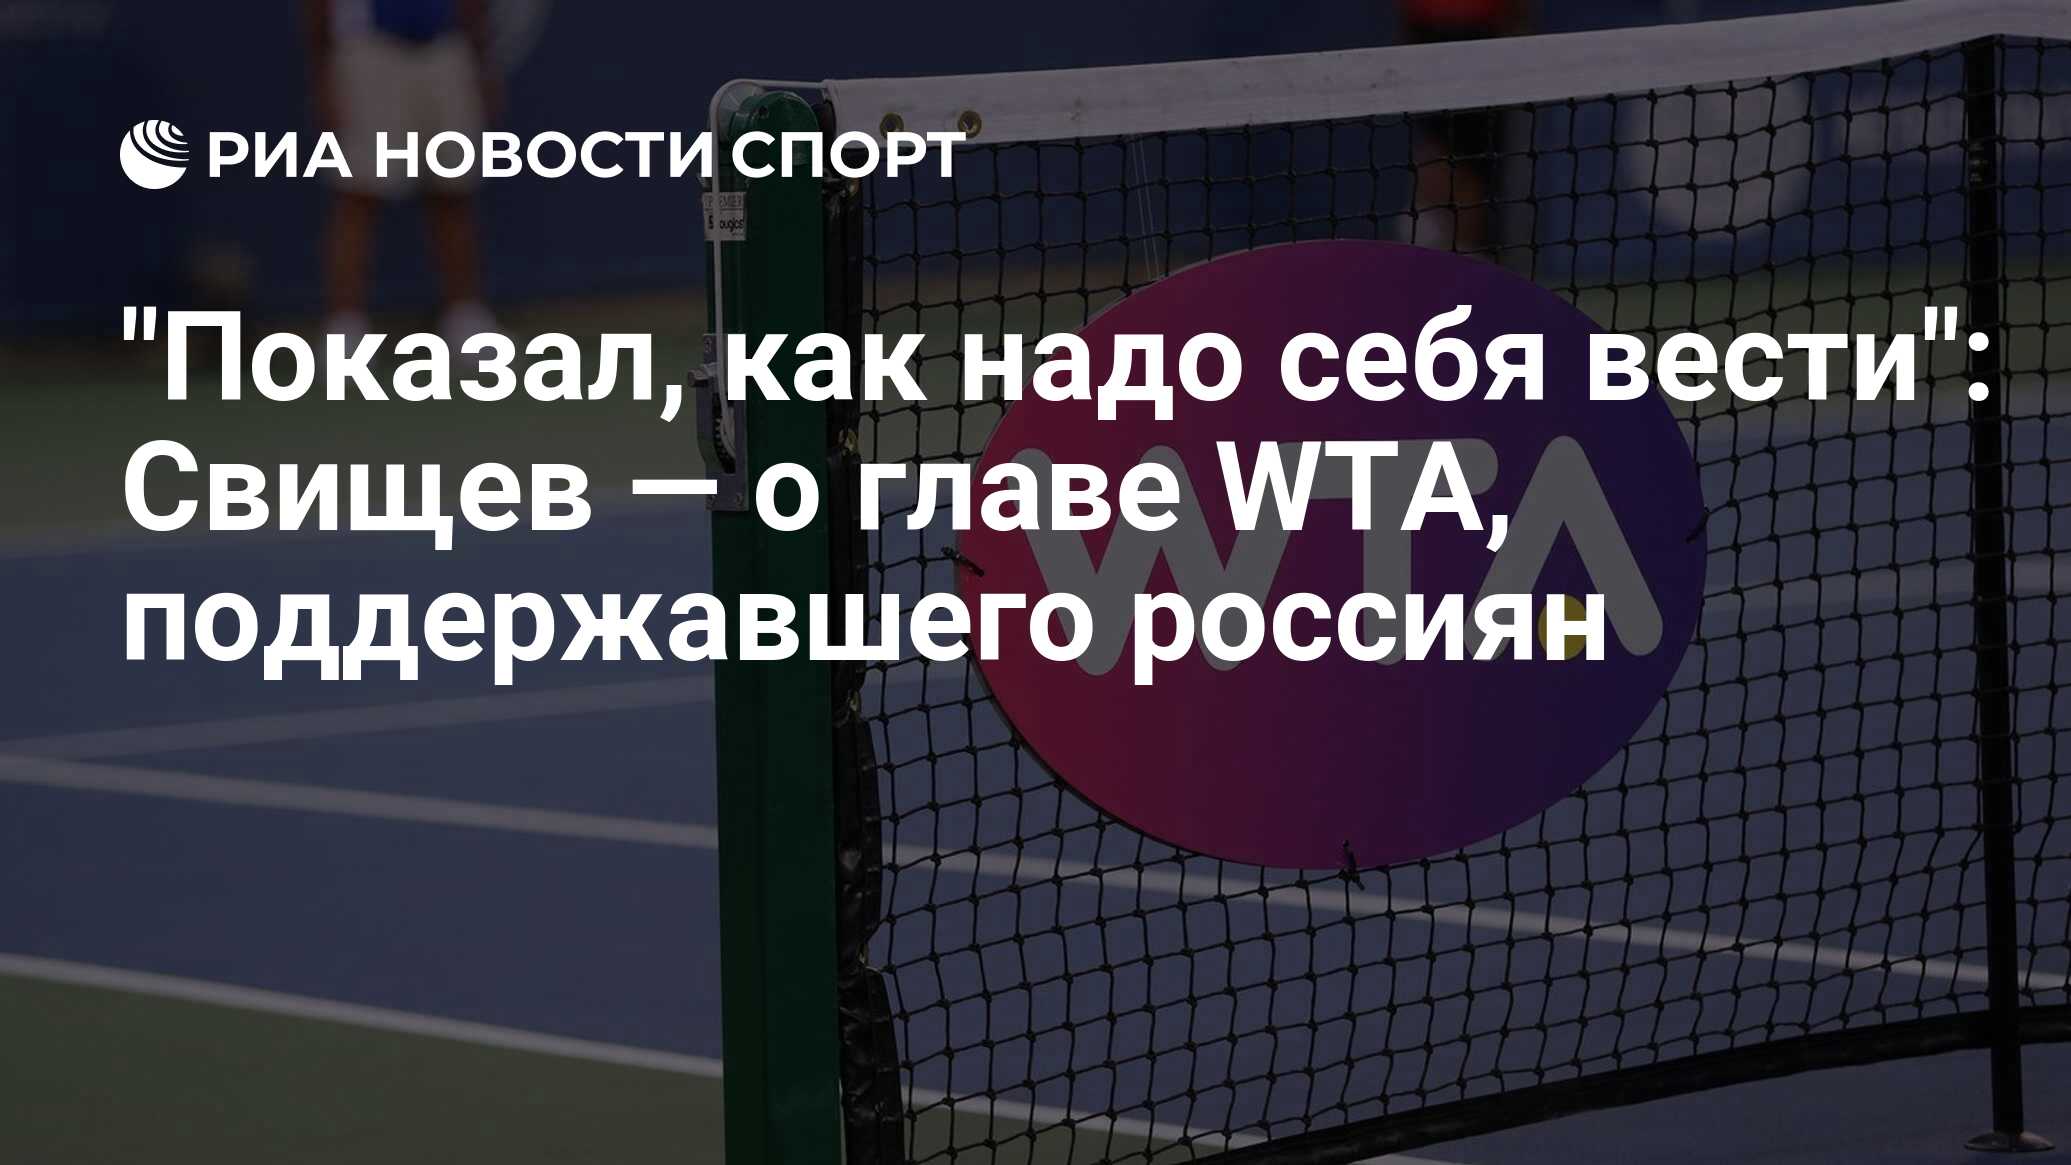 "Показал, как надо себя вести": Свищев — о главе WTA, поддержавшего россиян